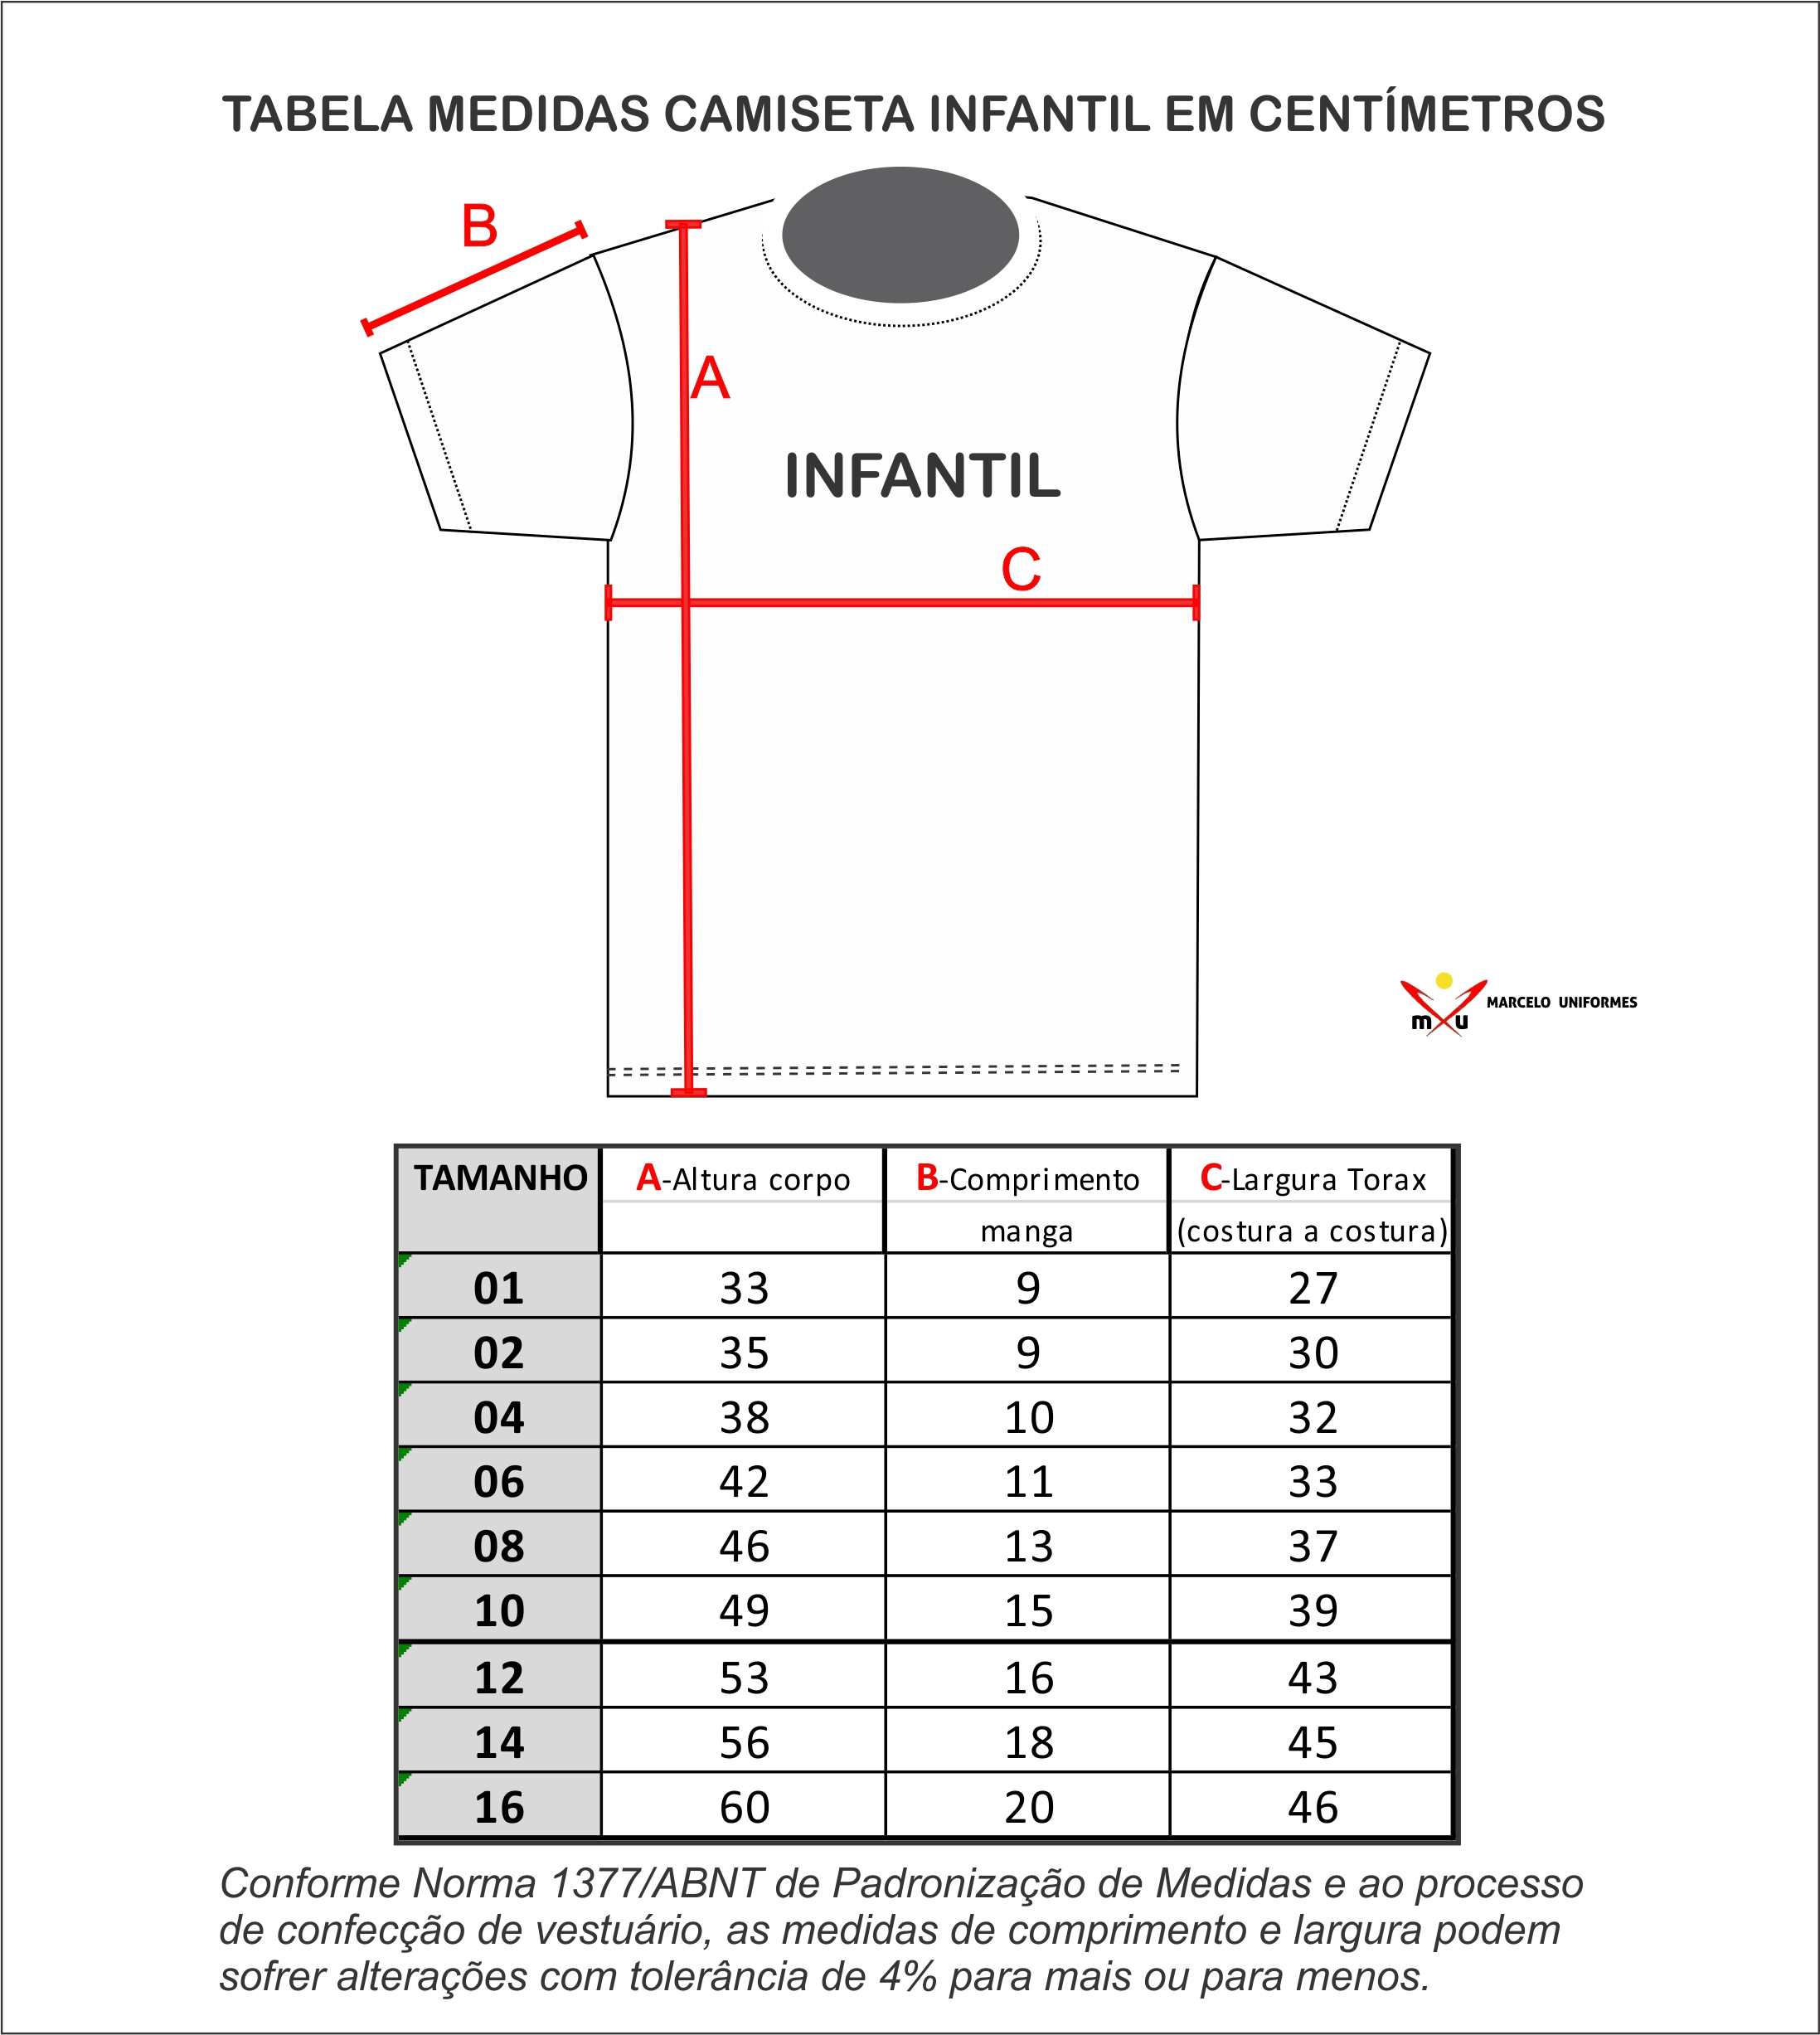 marioneta Eficacia medianoche Marcelo Uniformes - Tabela de Medidas Camisetas Infantis